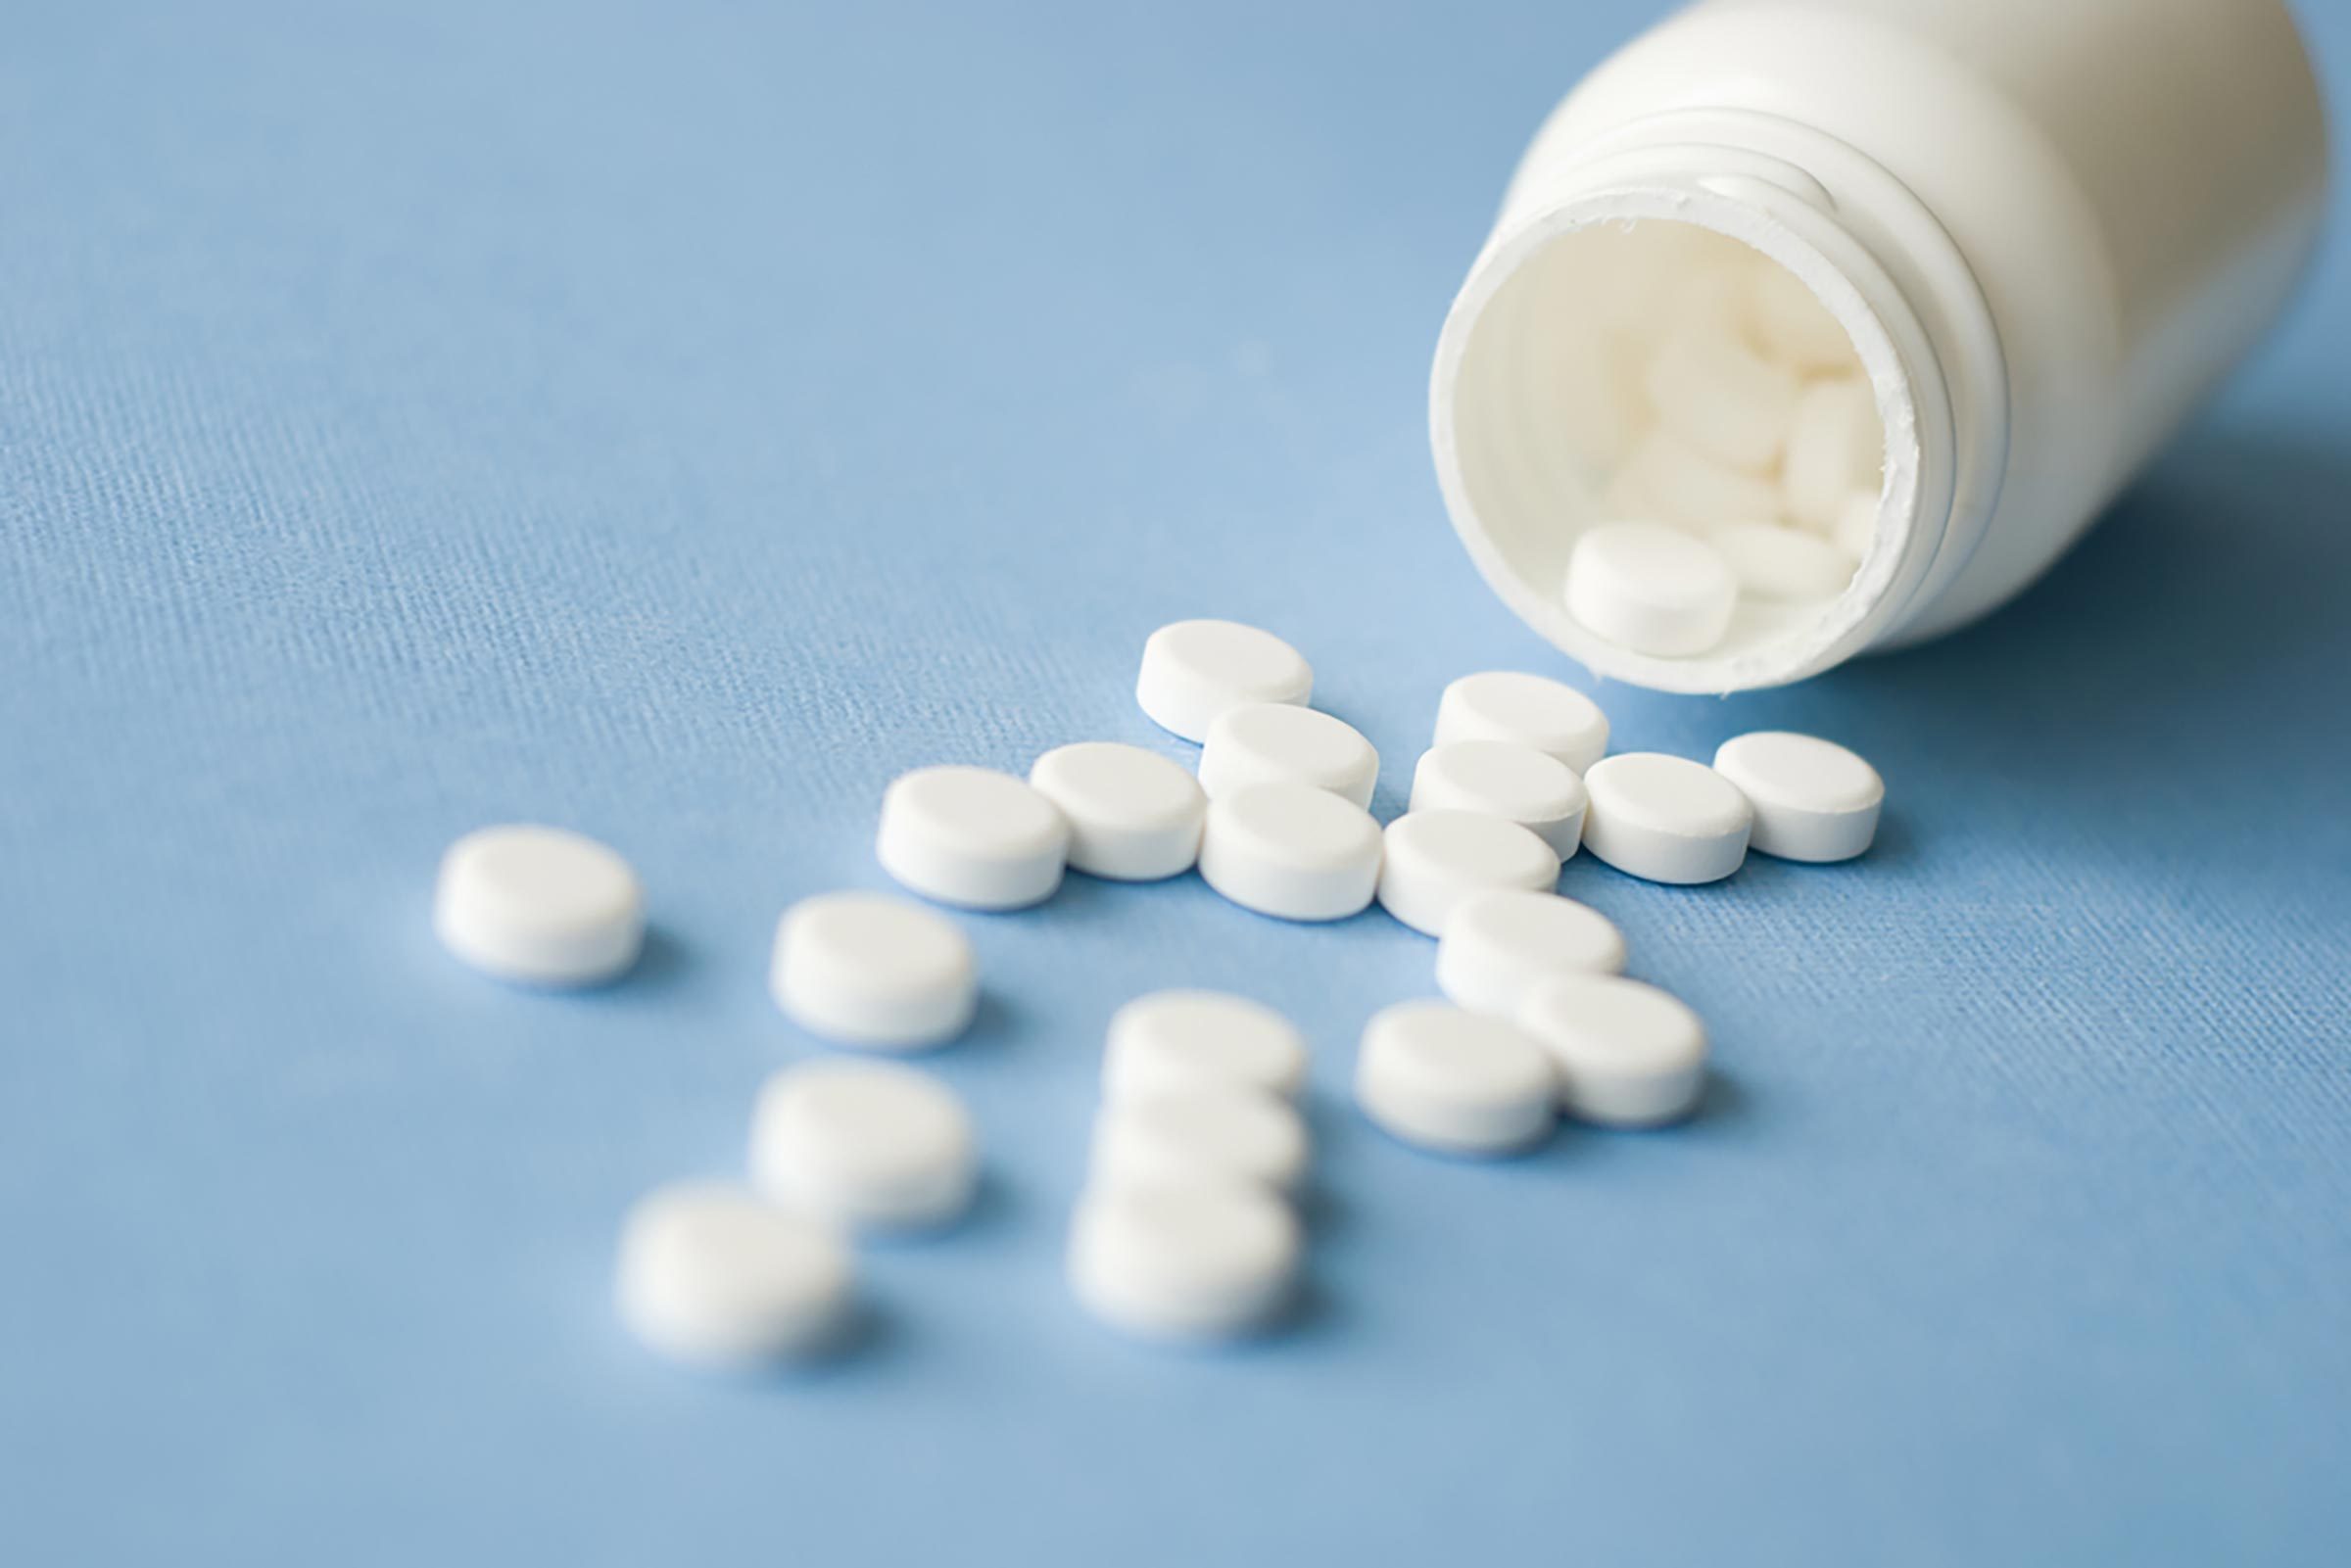 Conseil sant : ne pas sauter le placebo des pilules contraceptives